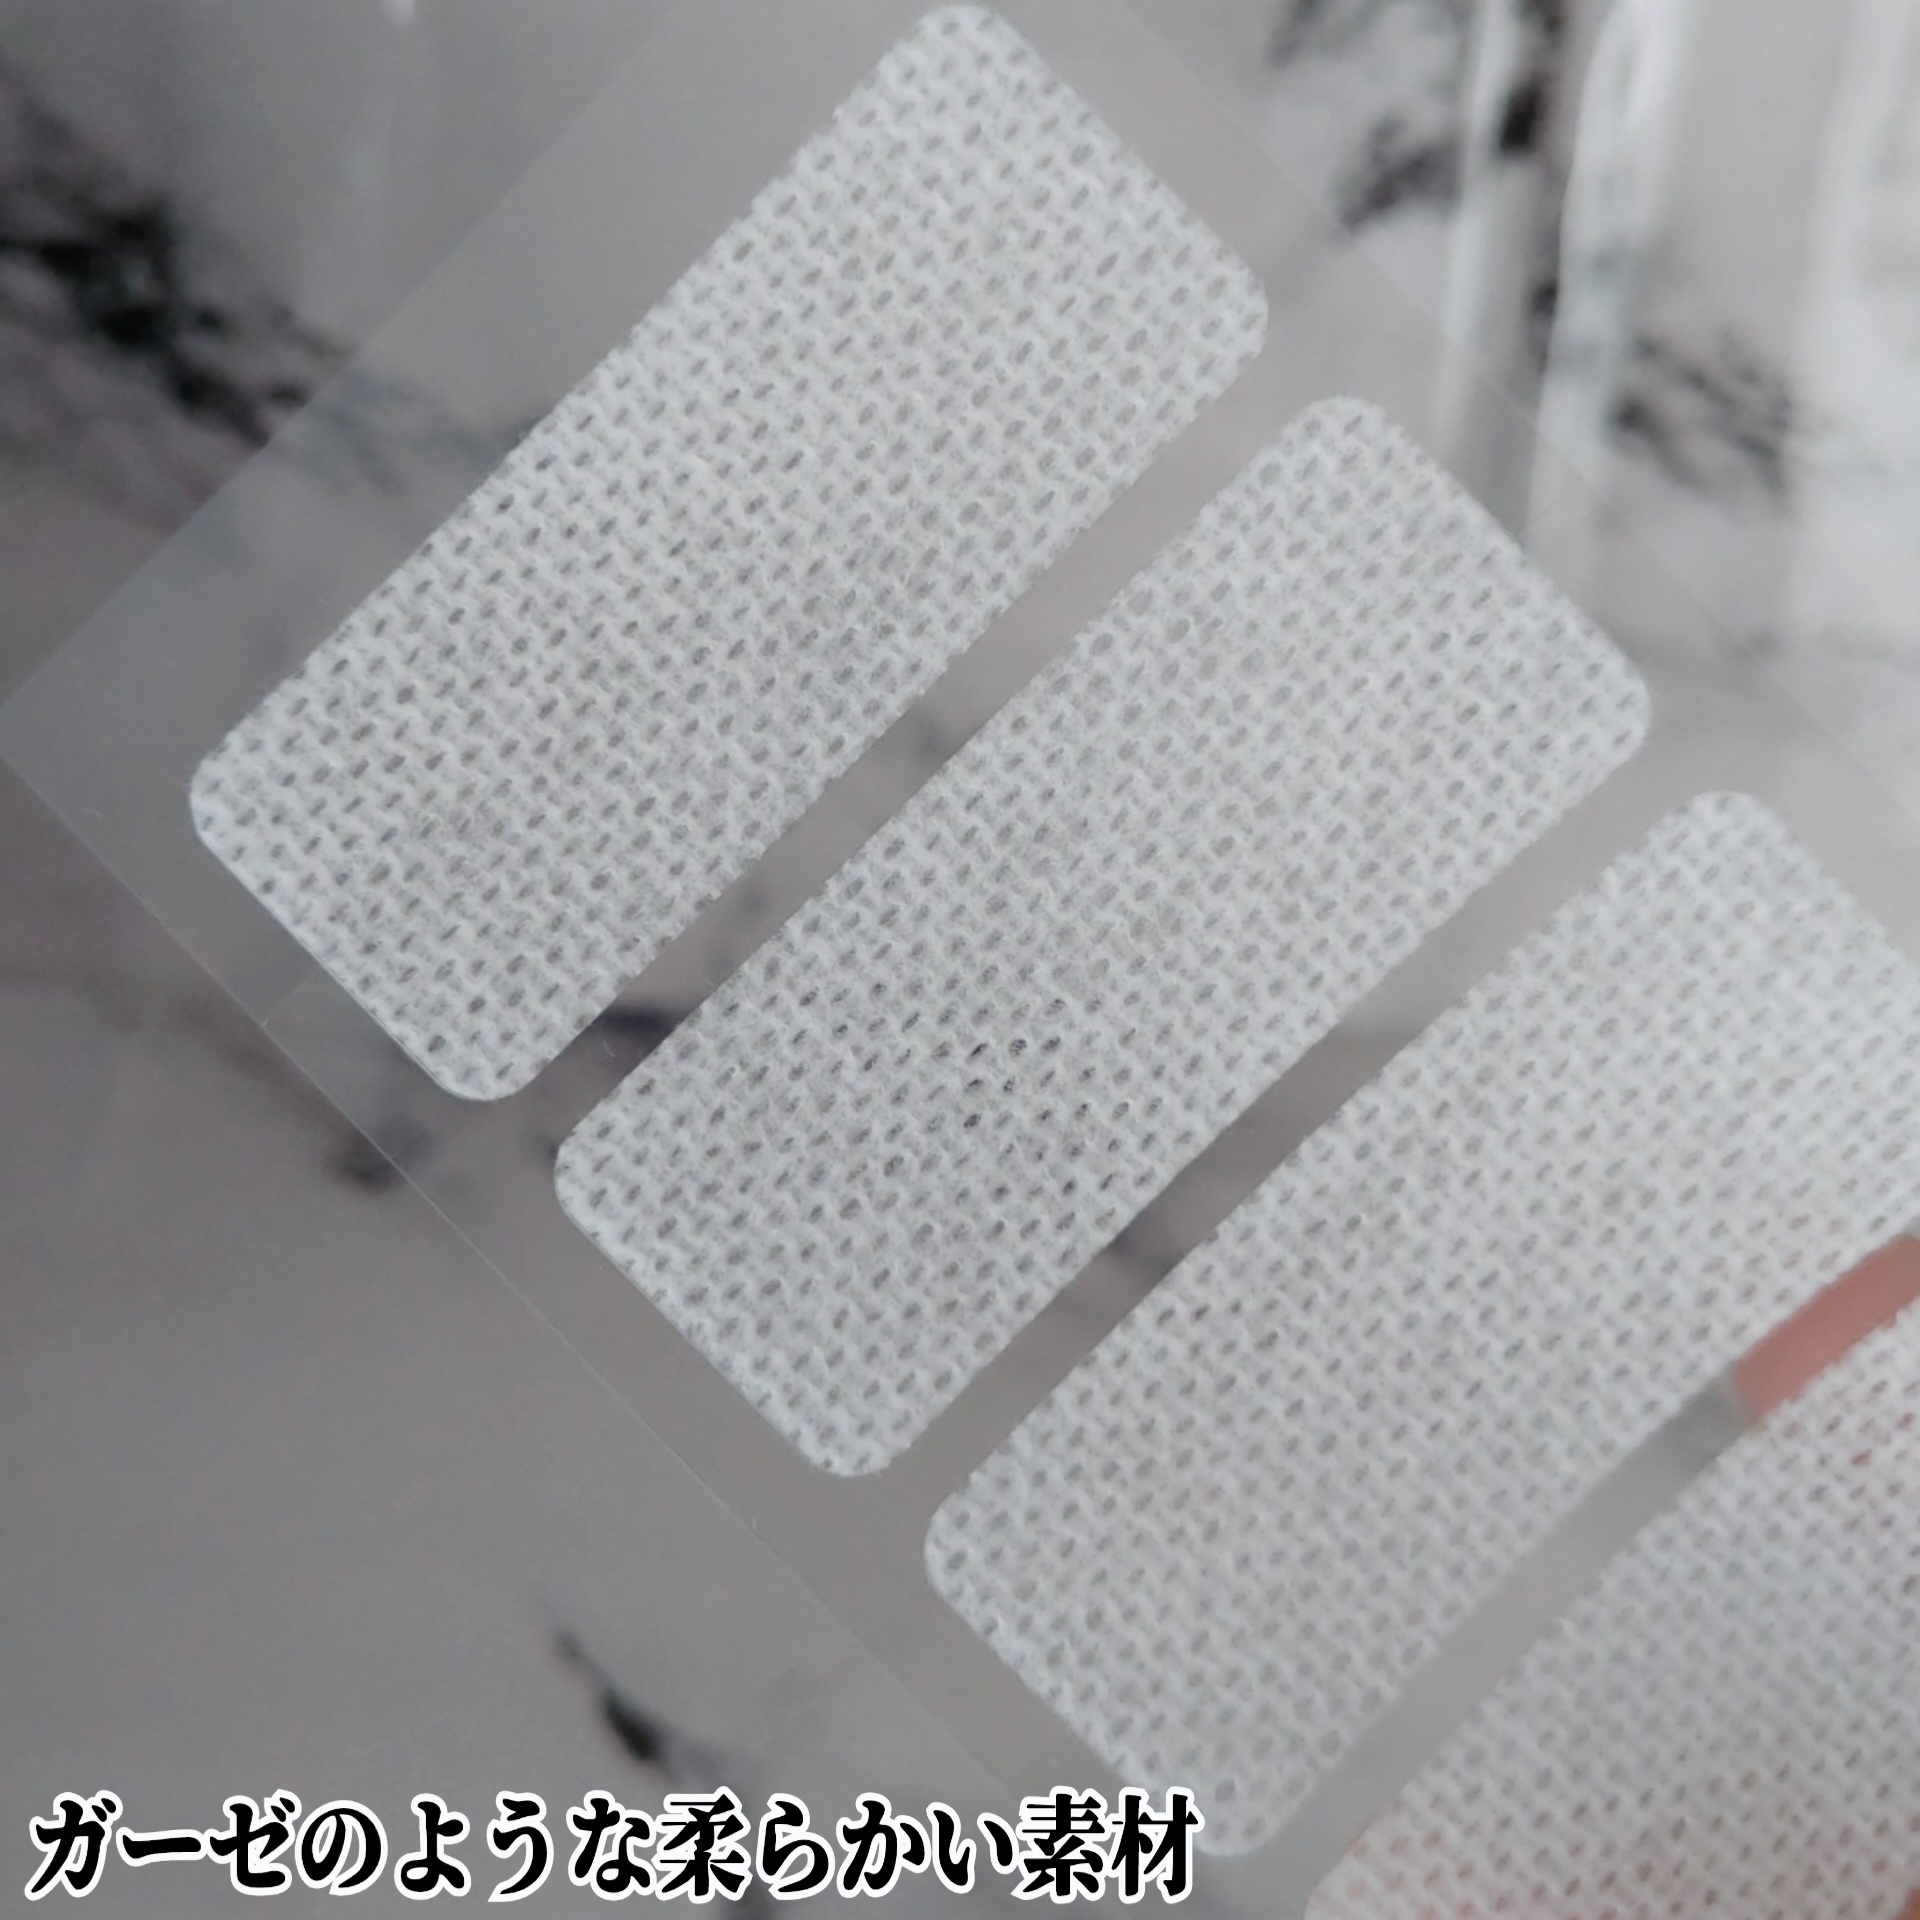 東洋化学株式会社　カバがCOVER! おやすみテープ 24枚入を使ったYuKaRi♡さんのクチコミ画像5